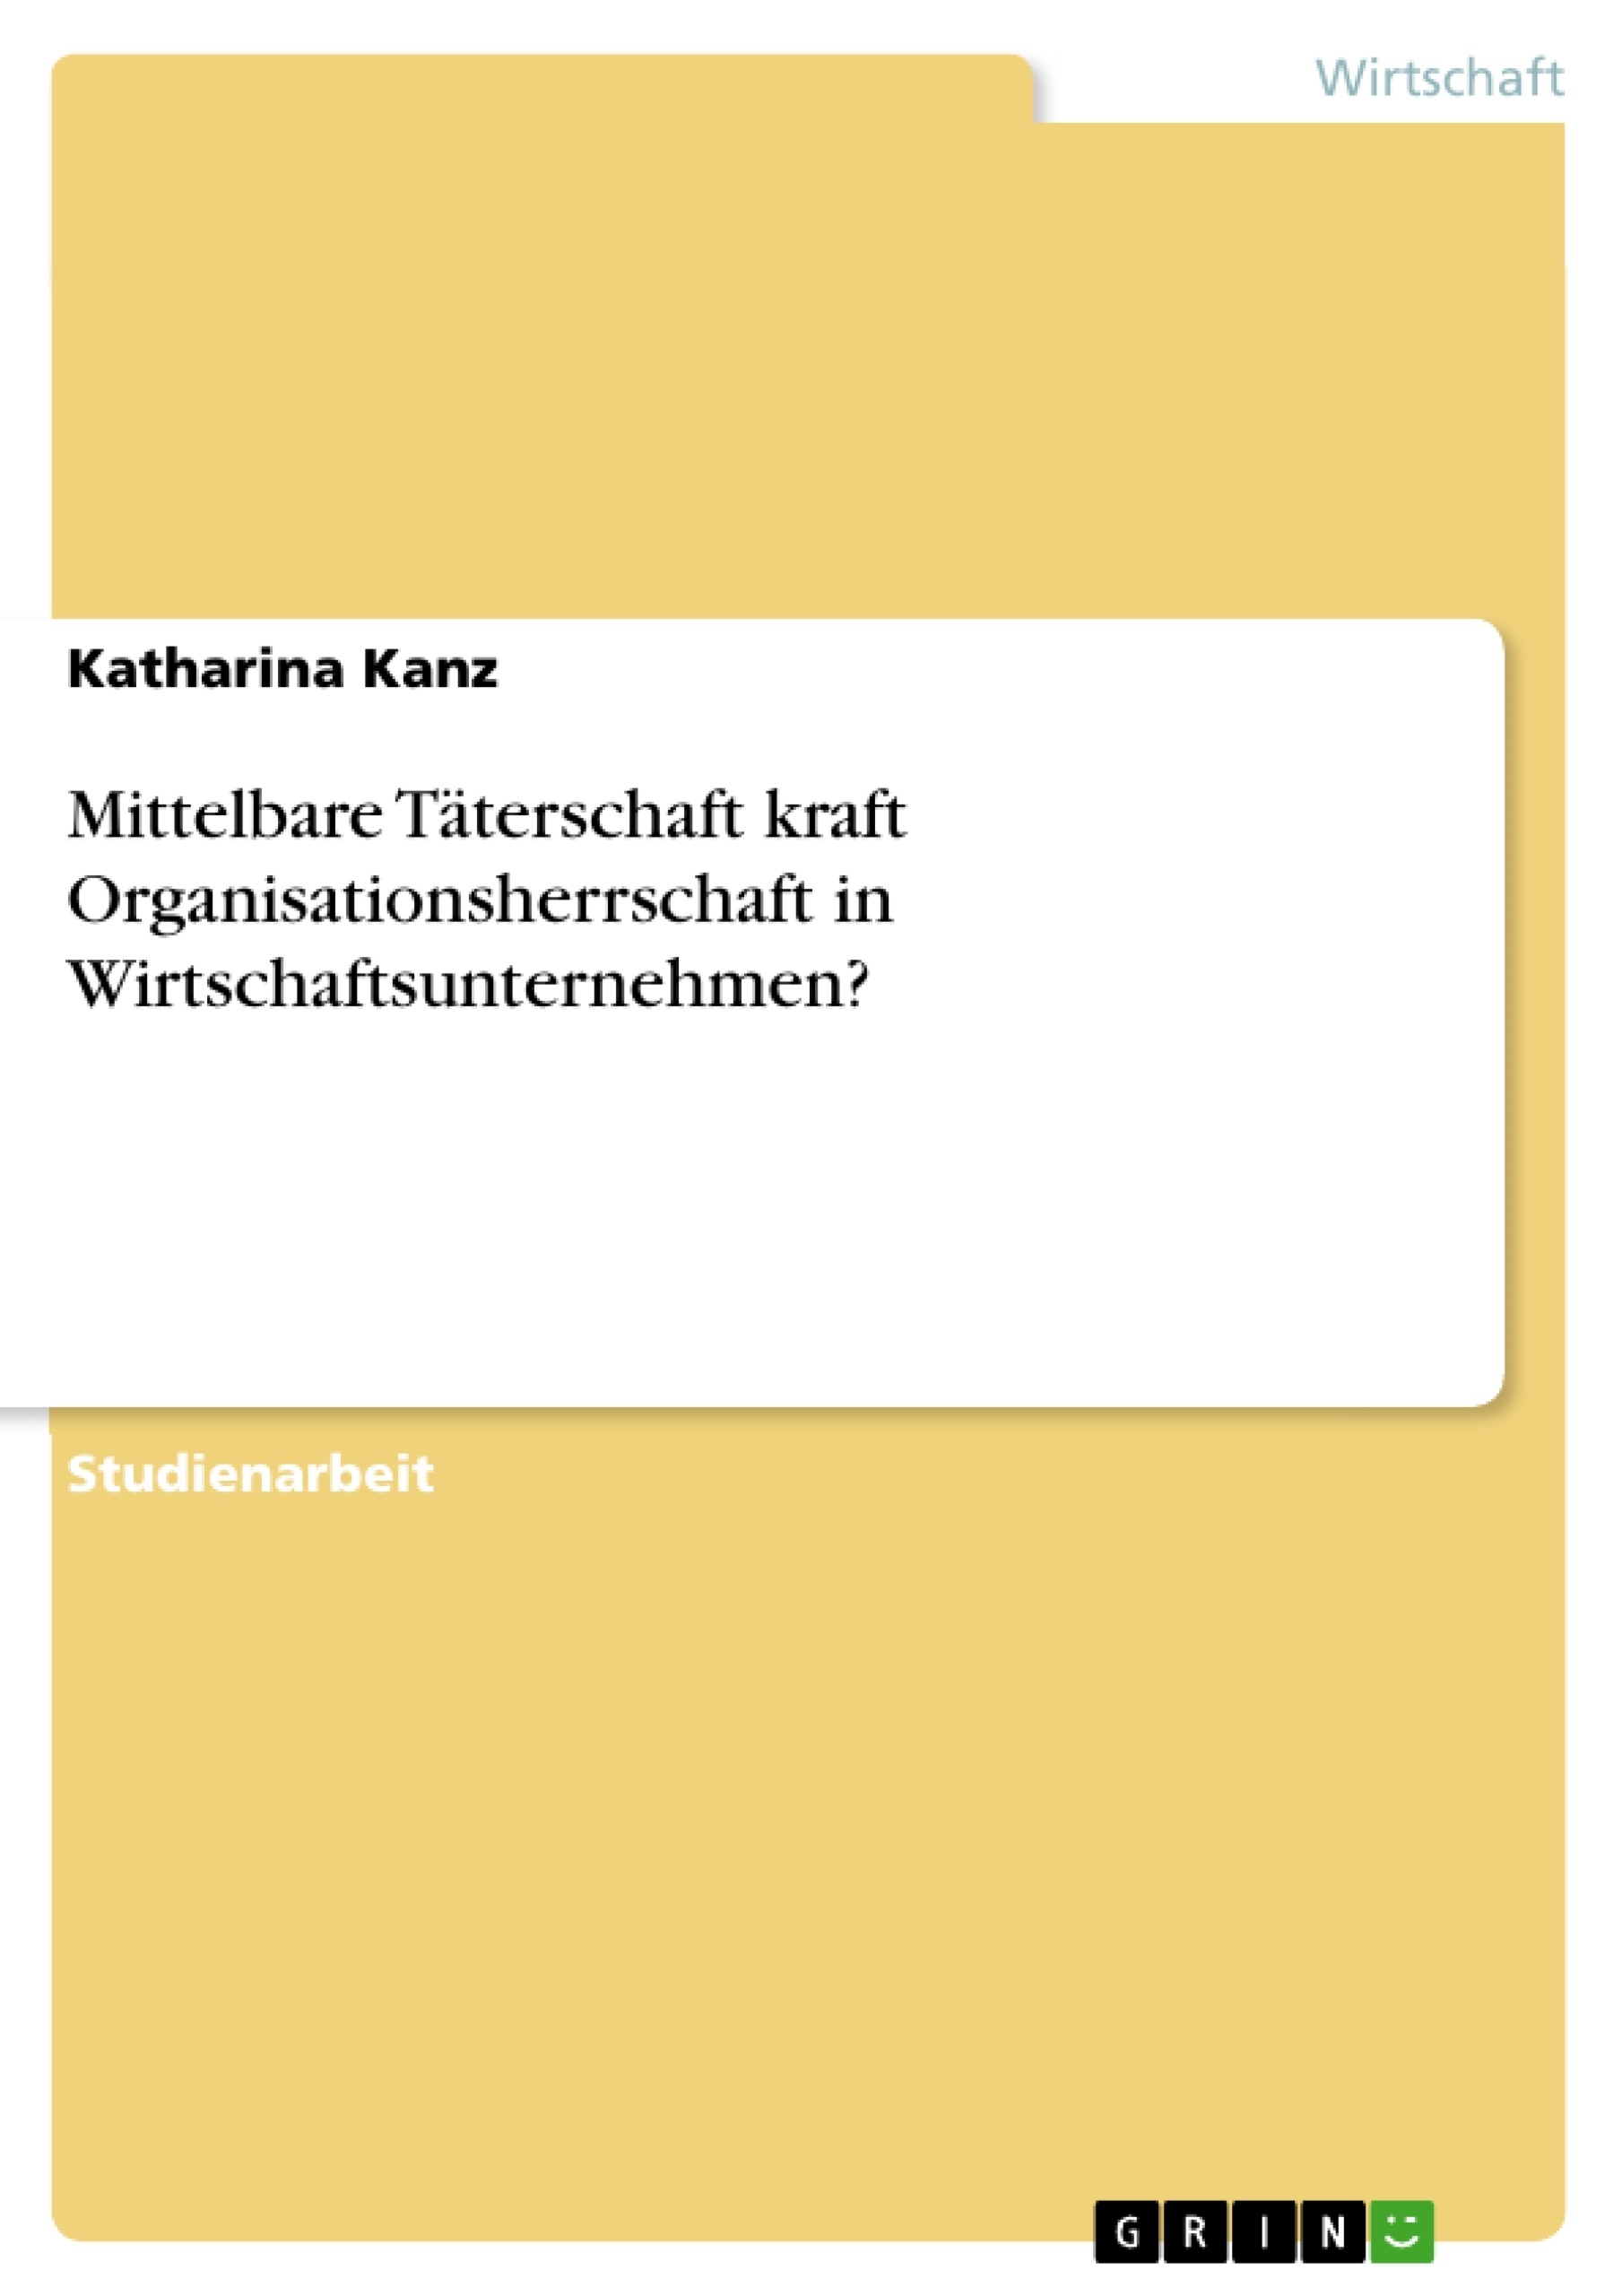 Title: Mittelbare Täterschaft kraft Organisationsherrschaft in Wirtschaftsunternehmen?